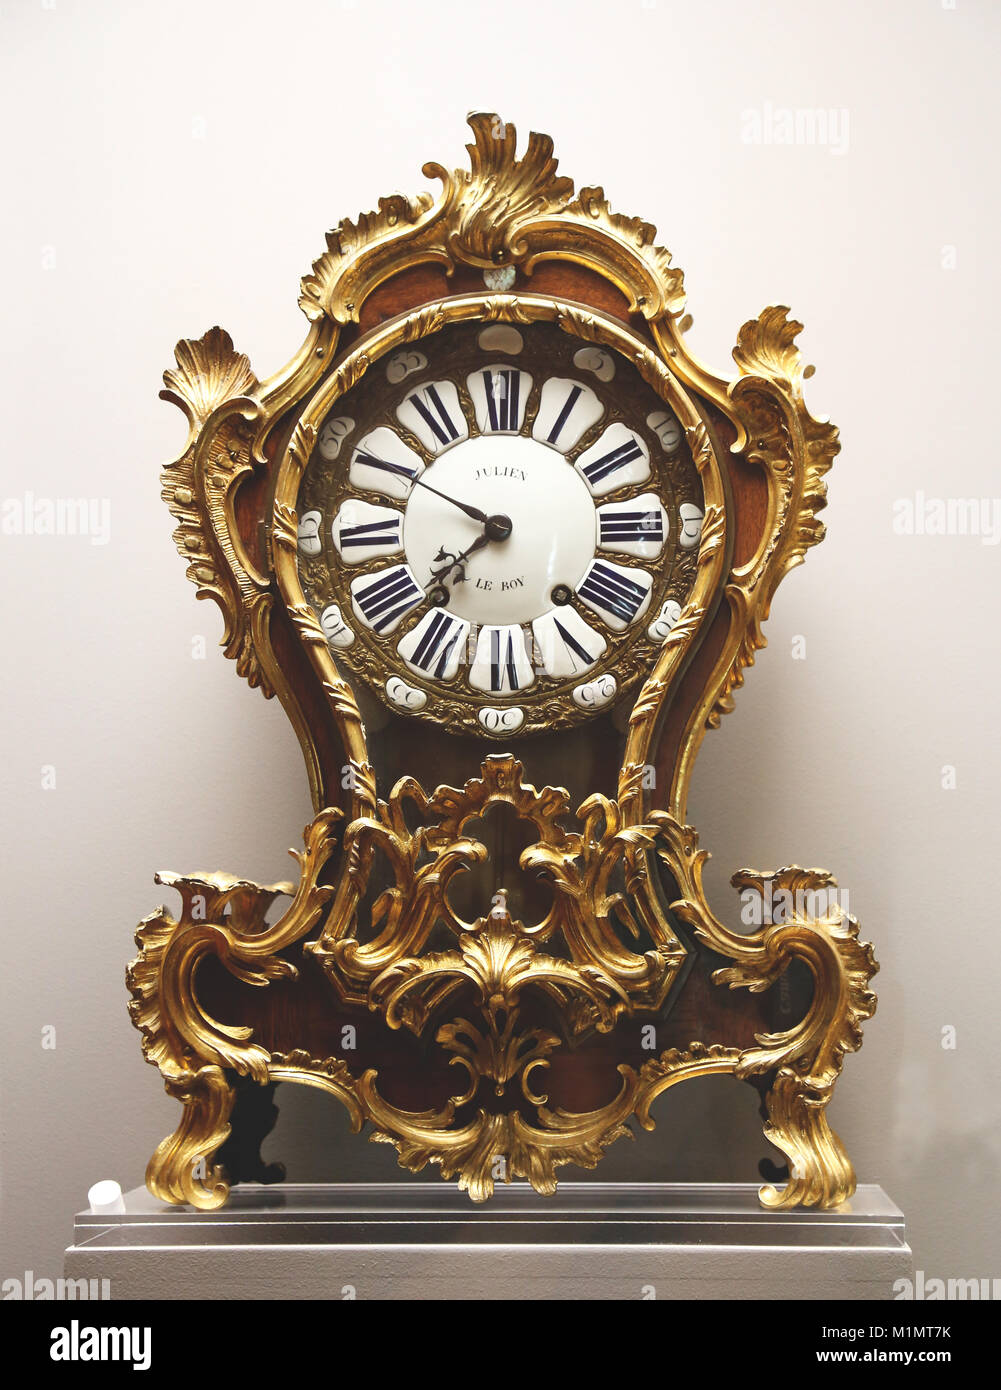 Soporte reloj por Julien Le Roy, master 1713, caso por Antoine Foullet, master 1747. 18ª siglo. Foto de stock